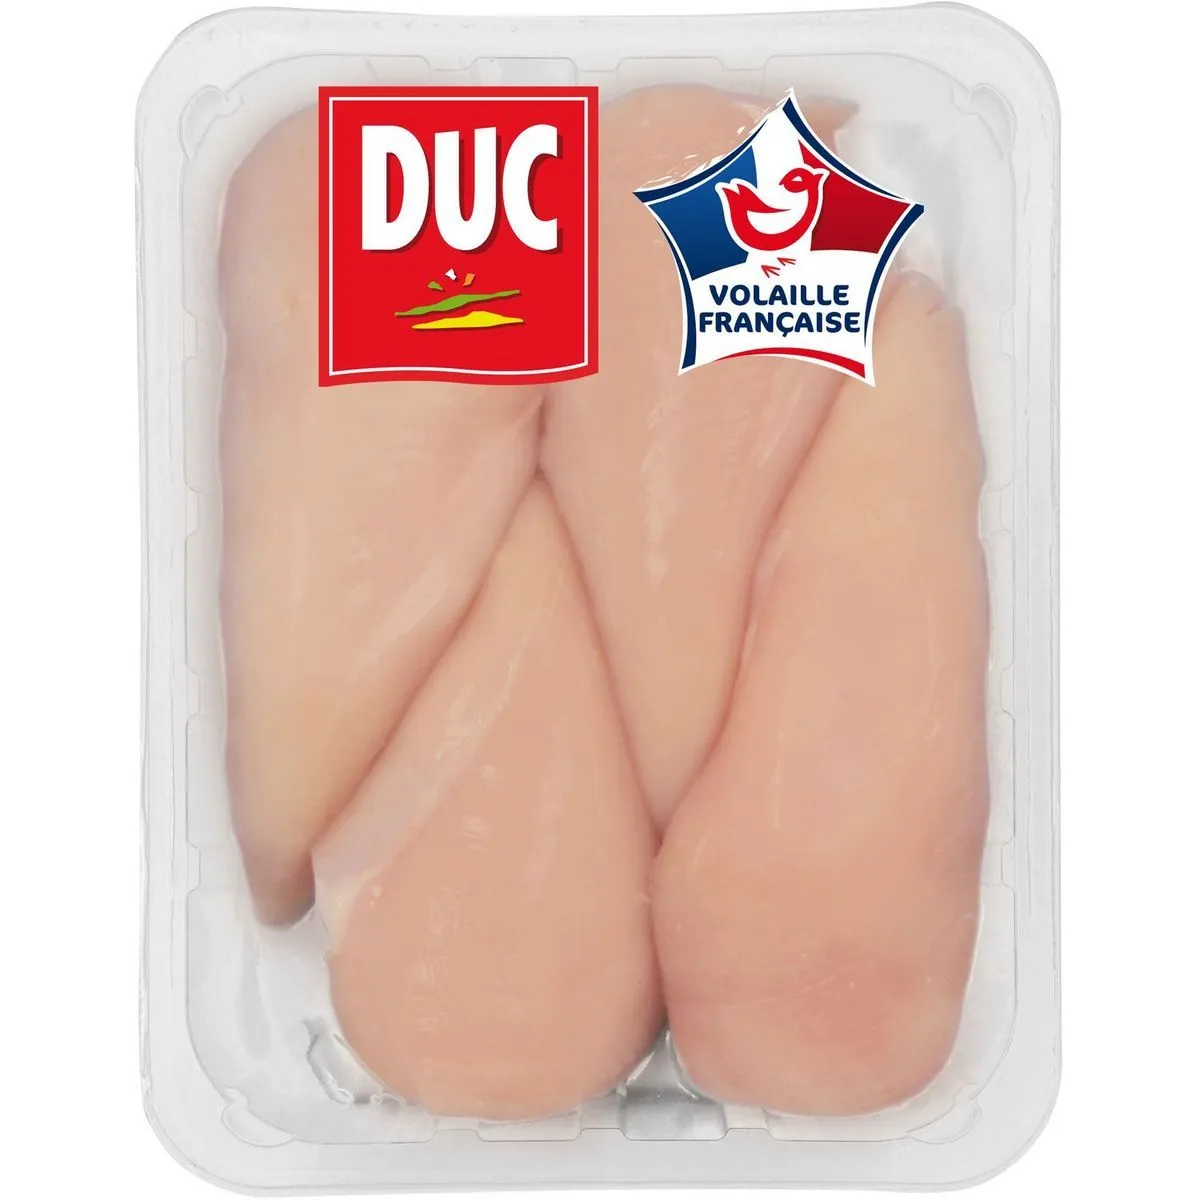 filets de poulet blancs halal duc(1)